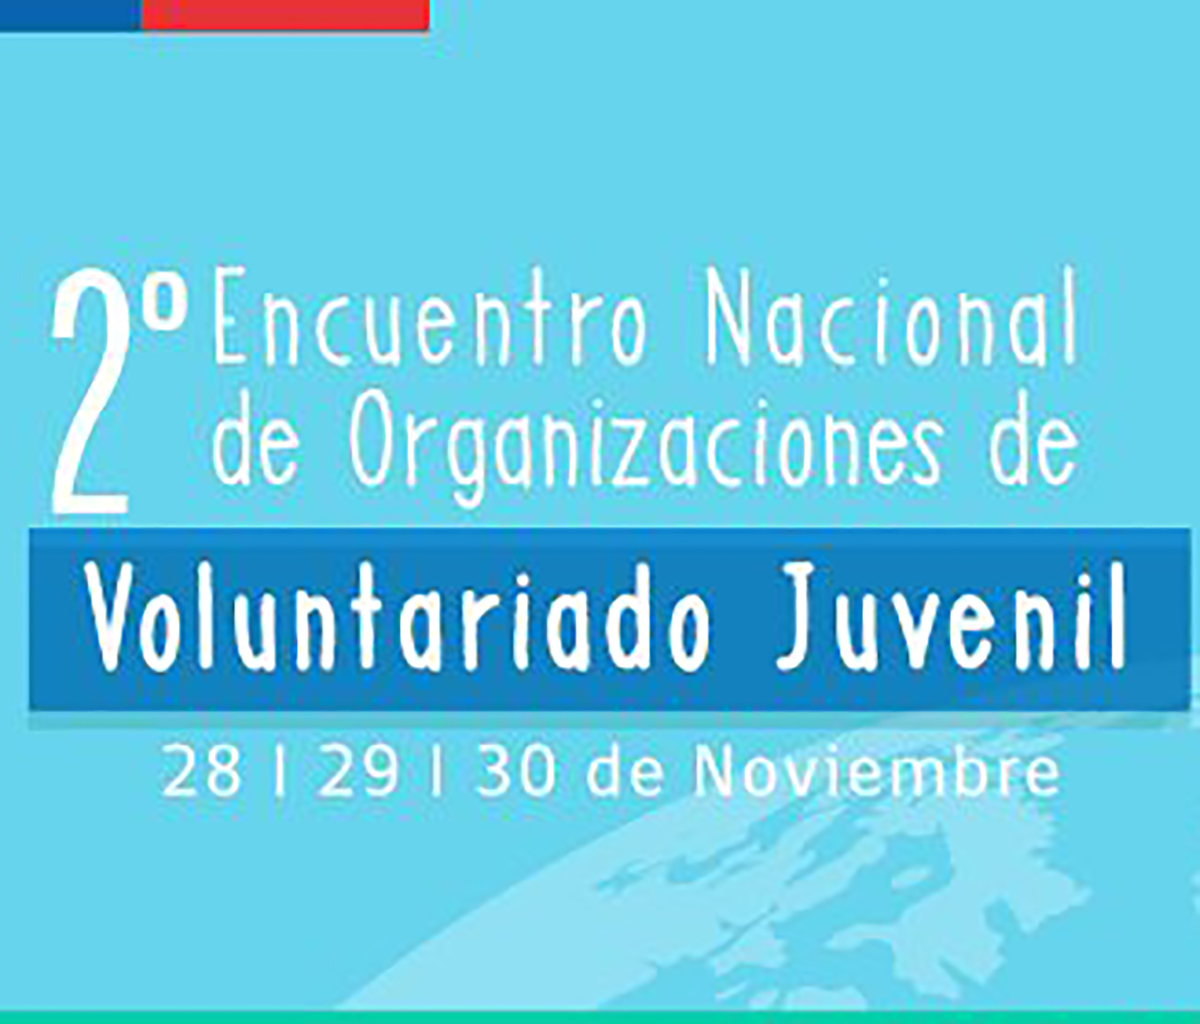 INJUV extiende plazo hasta este viernes 28 de octubre para inscribirse en el 2do encuentro nacional de voluntariado